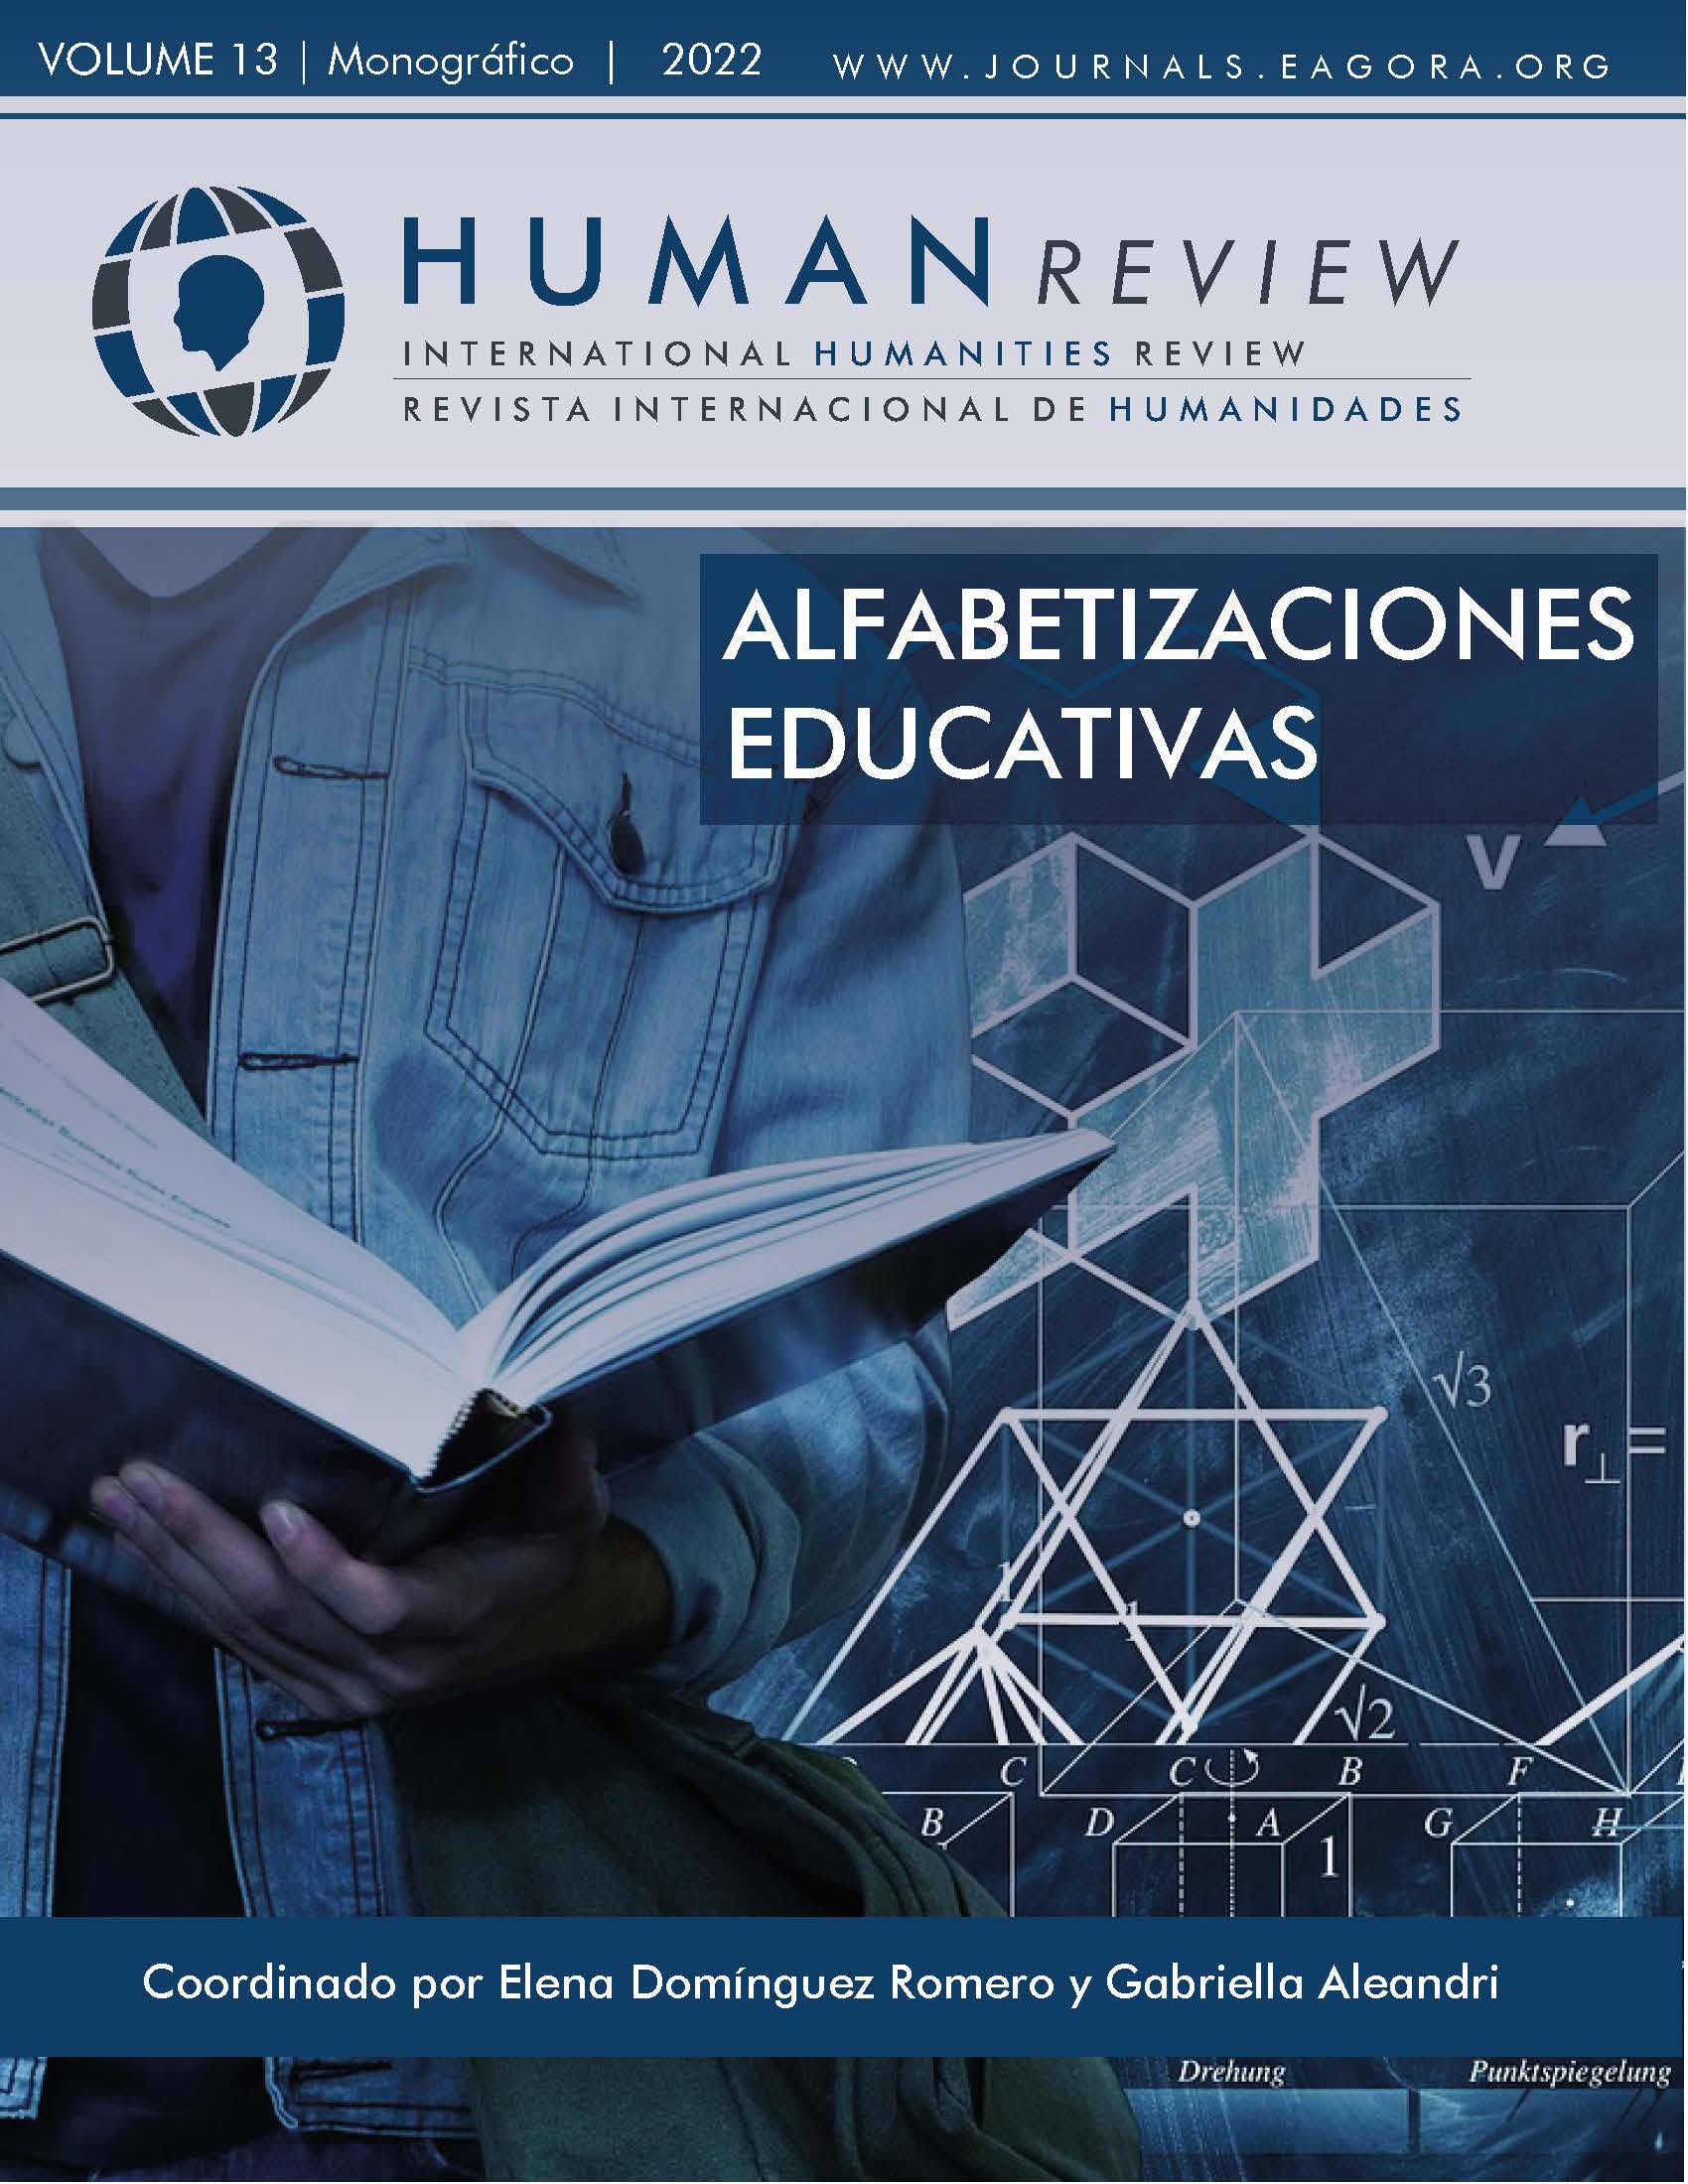 					Ver Vol. 13 Núm. 1 (2022): Monográfico: "Alfabetizaciones educativas"
				